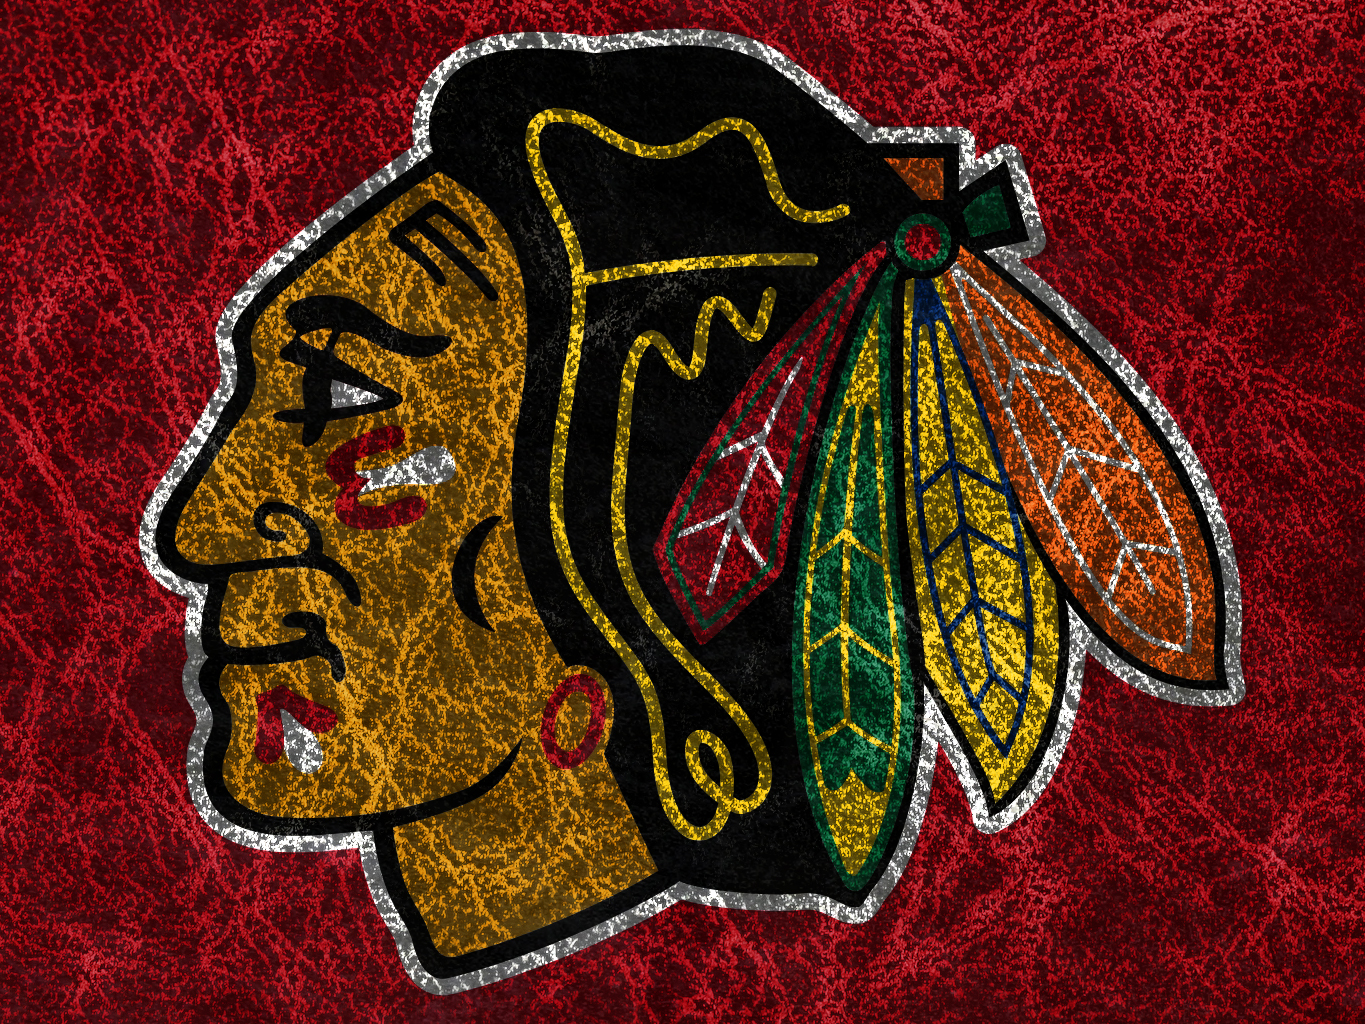 Chicago Blackhawks Background Image